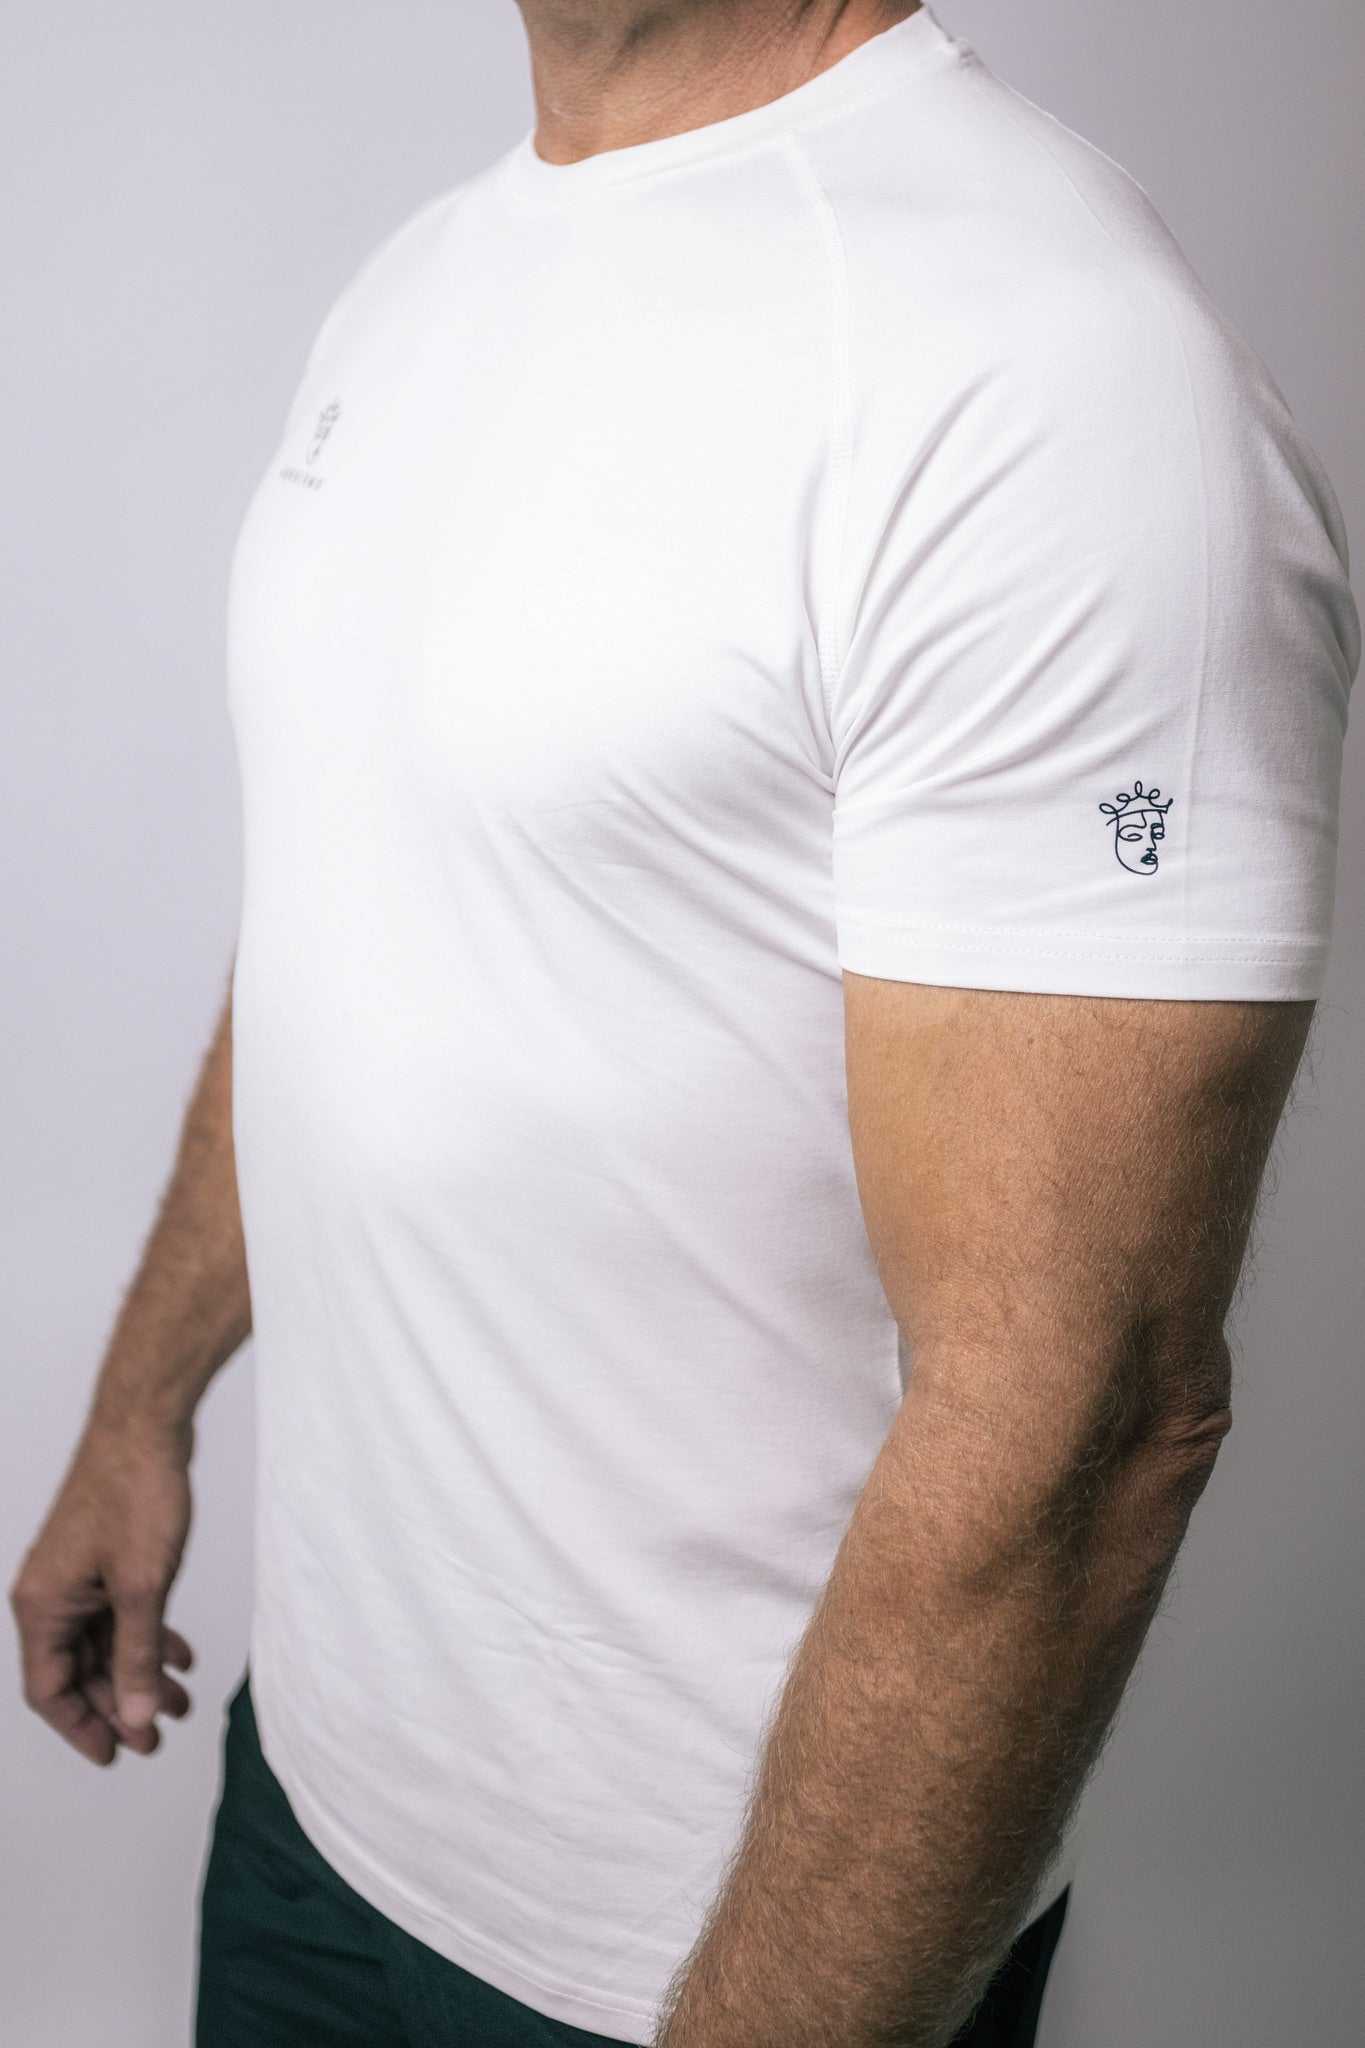 Joe T-shirt - White